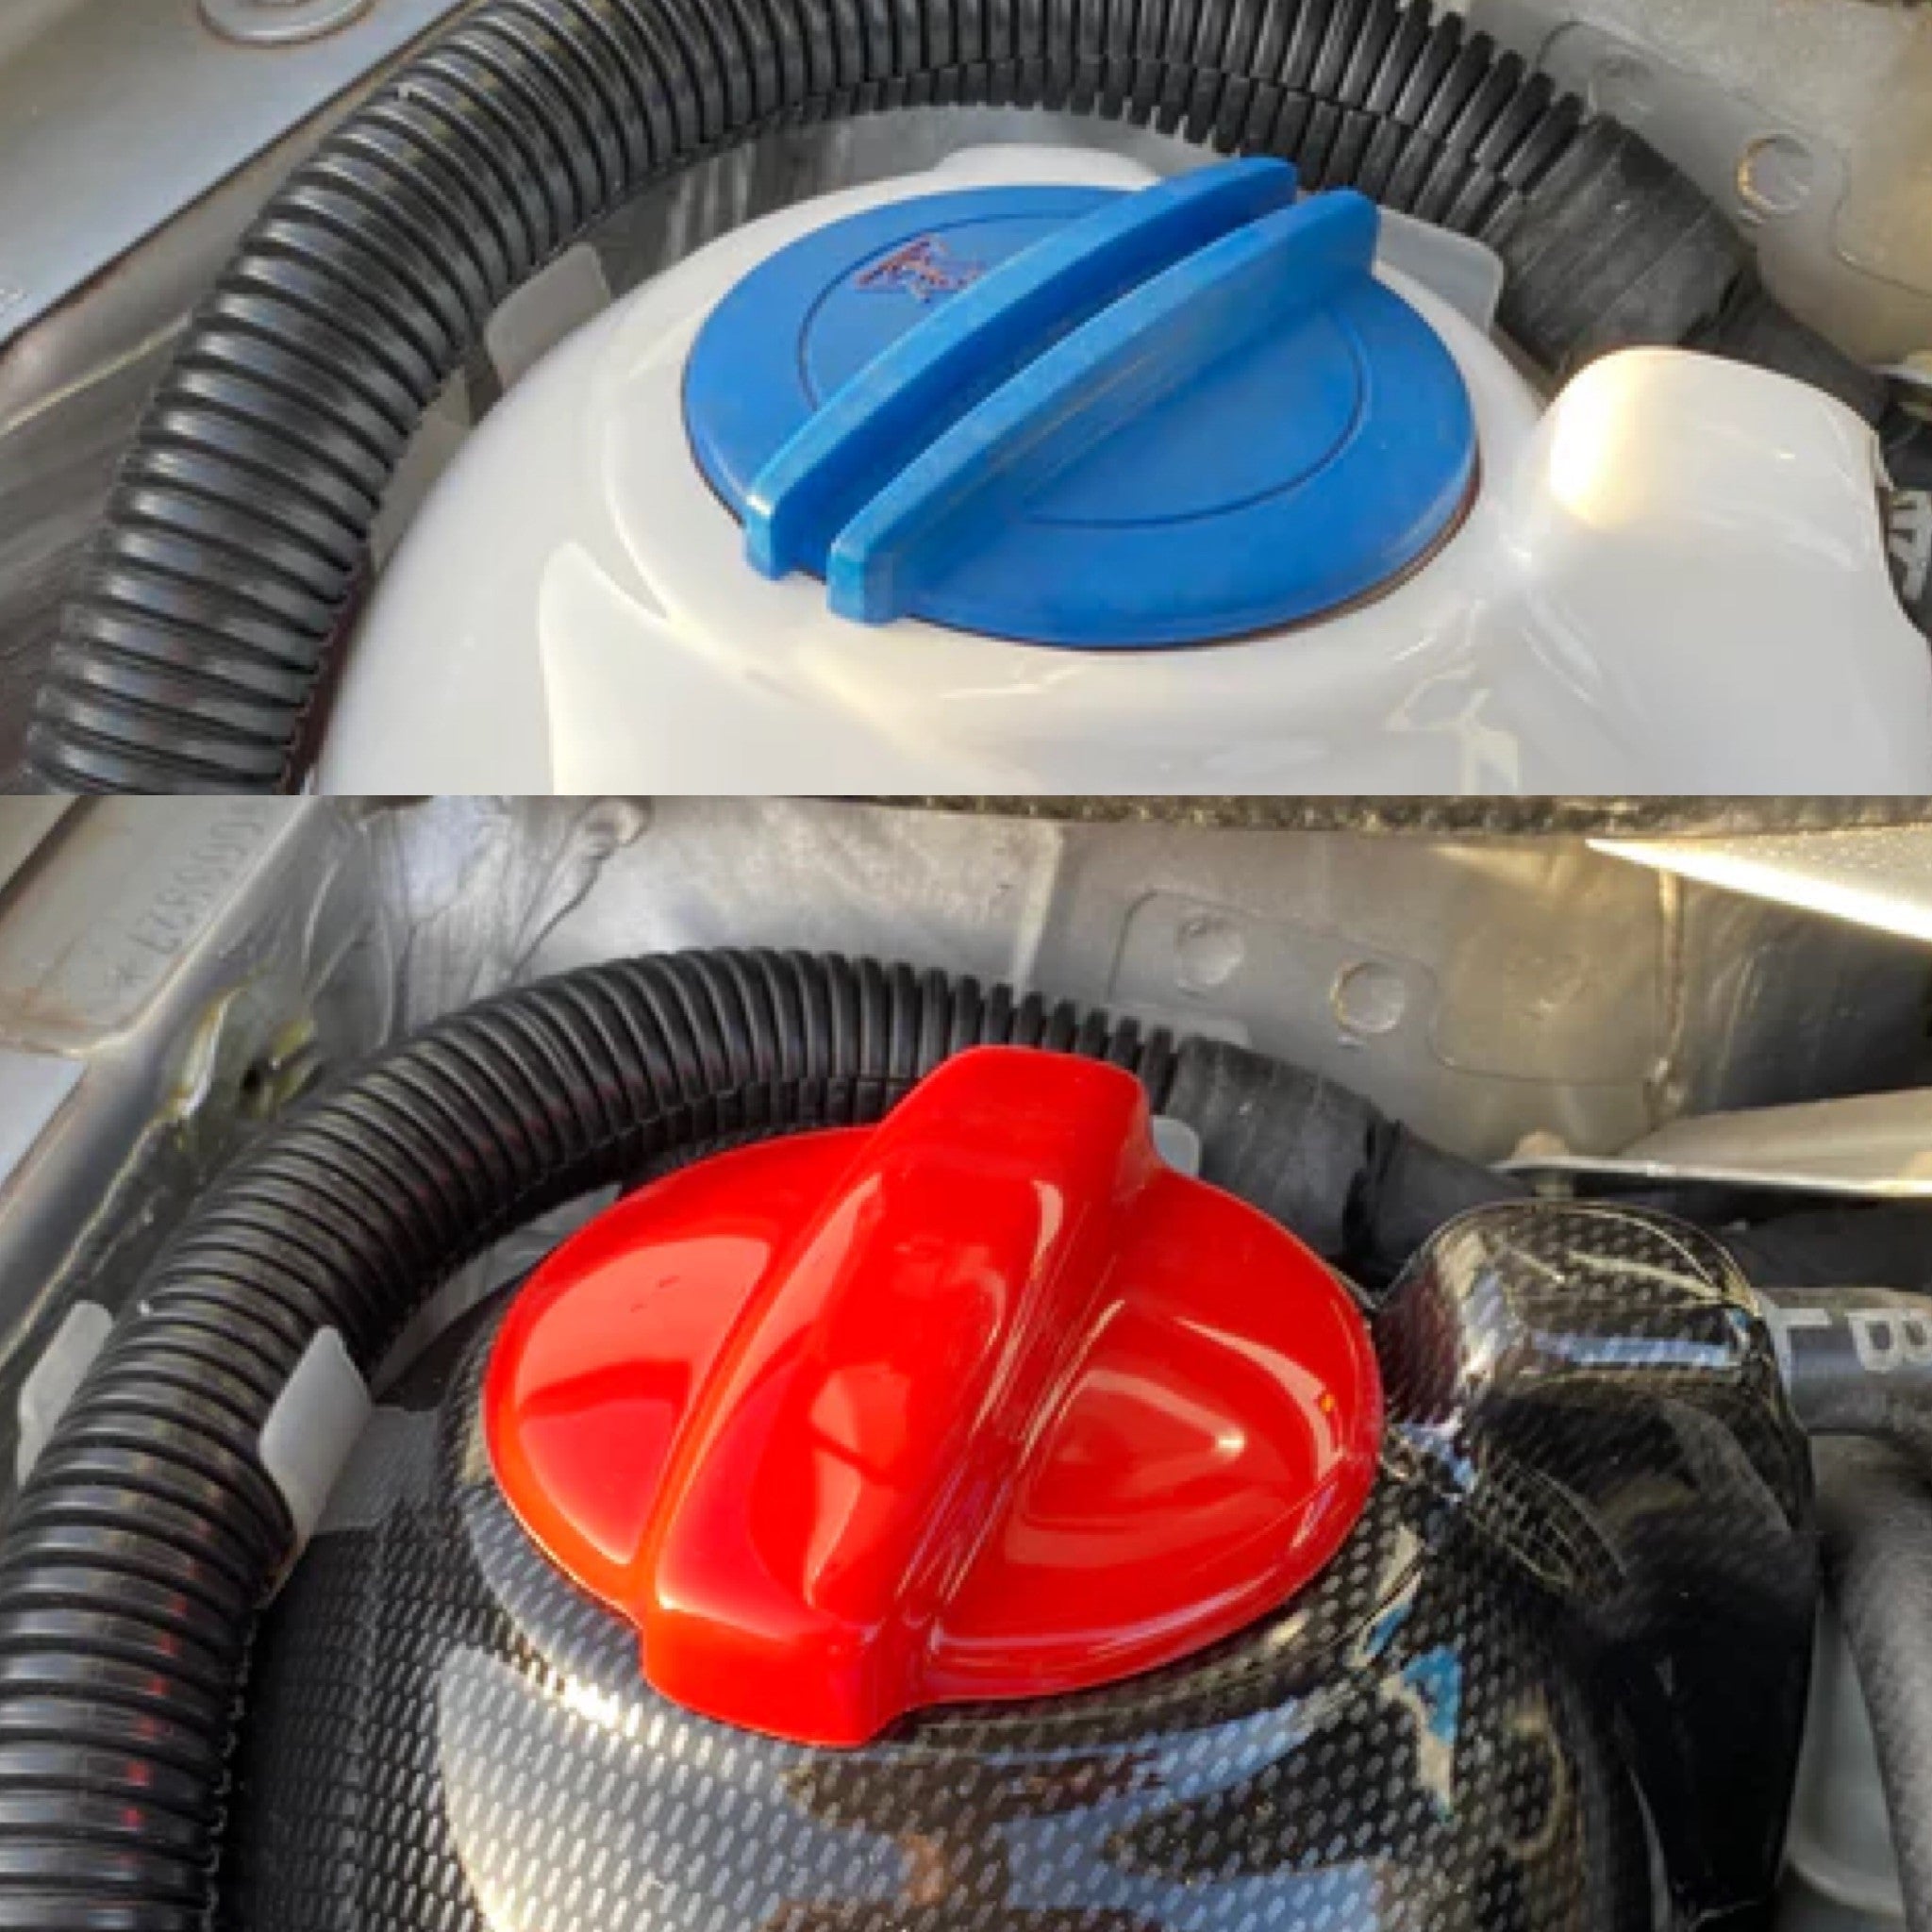 Proform Coolant Cap Cover - Seat Leon (Plastic Finishes)